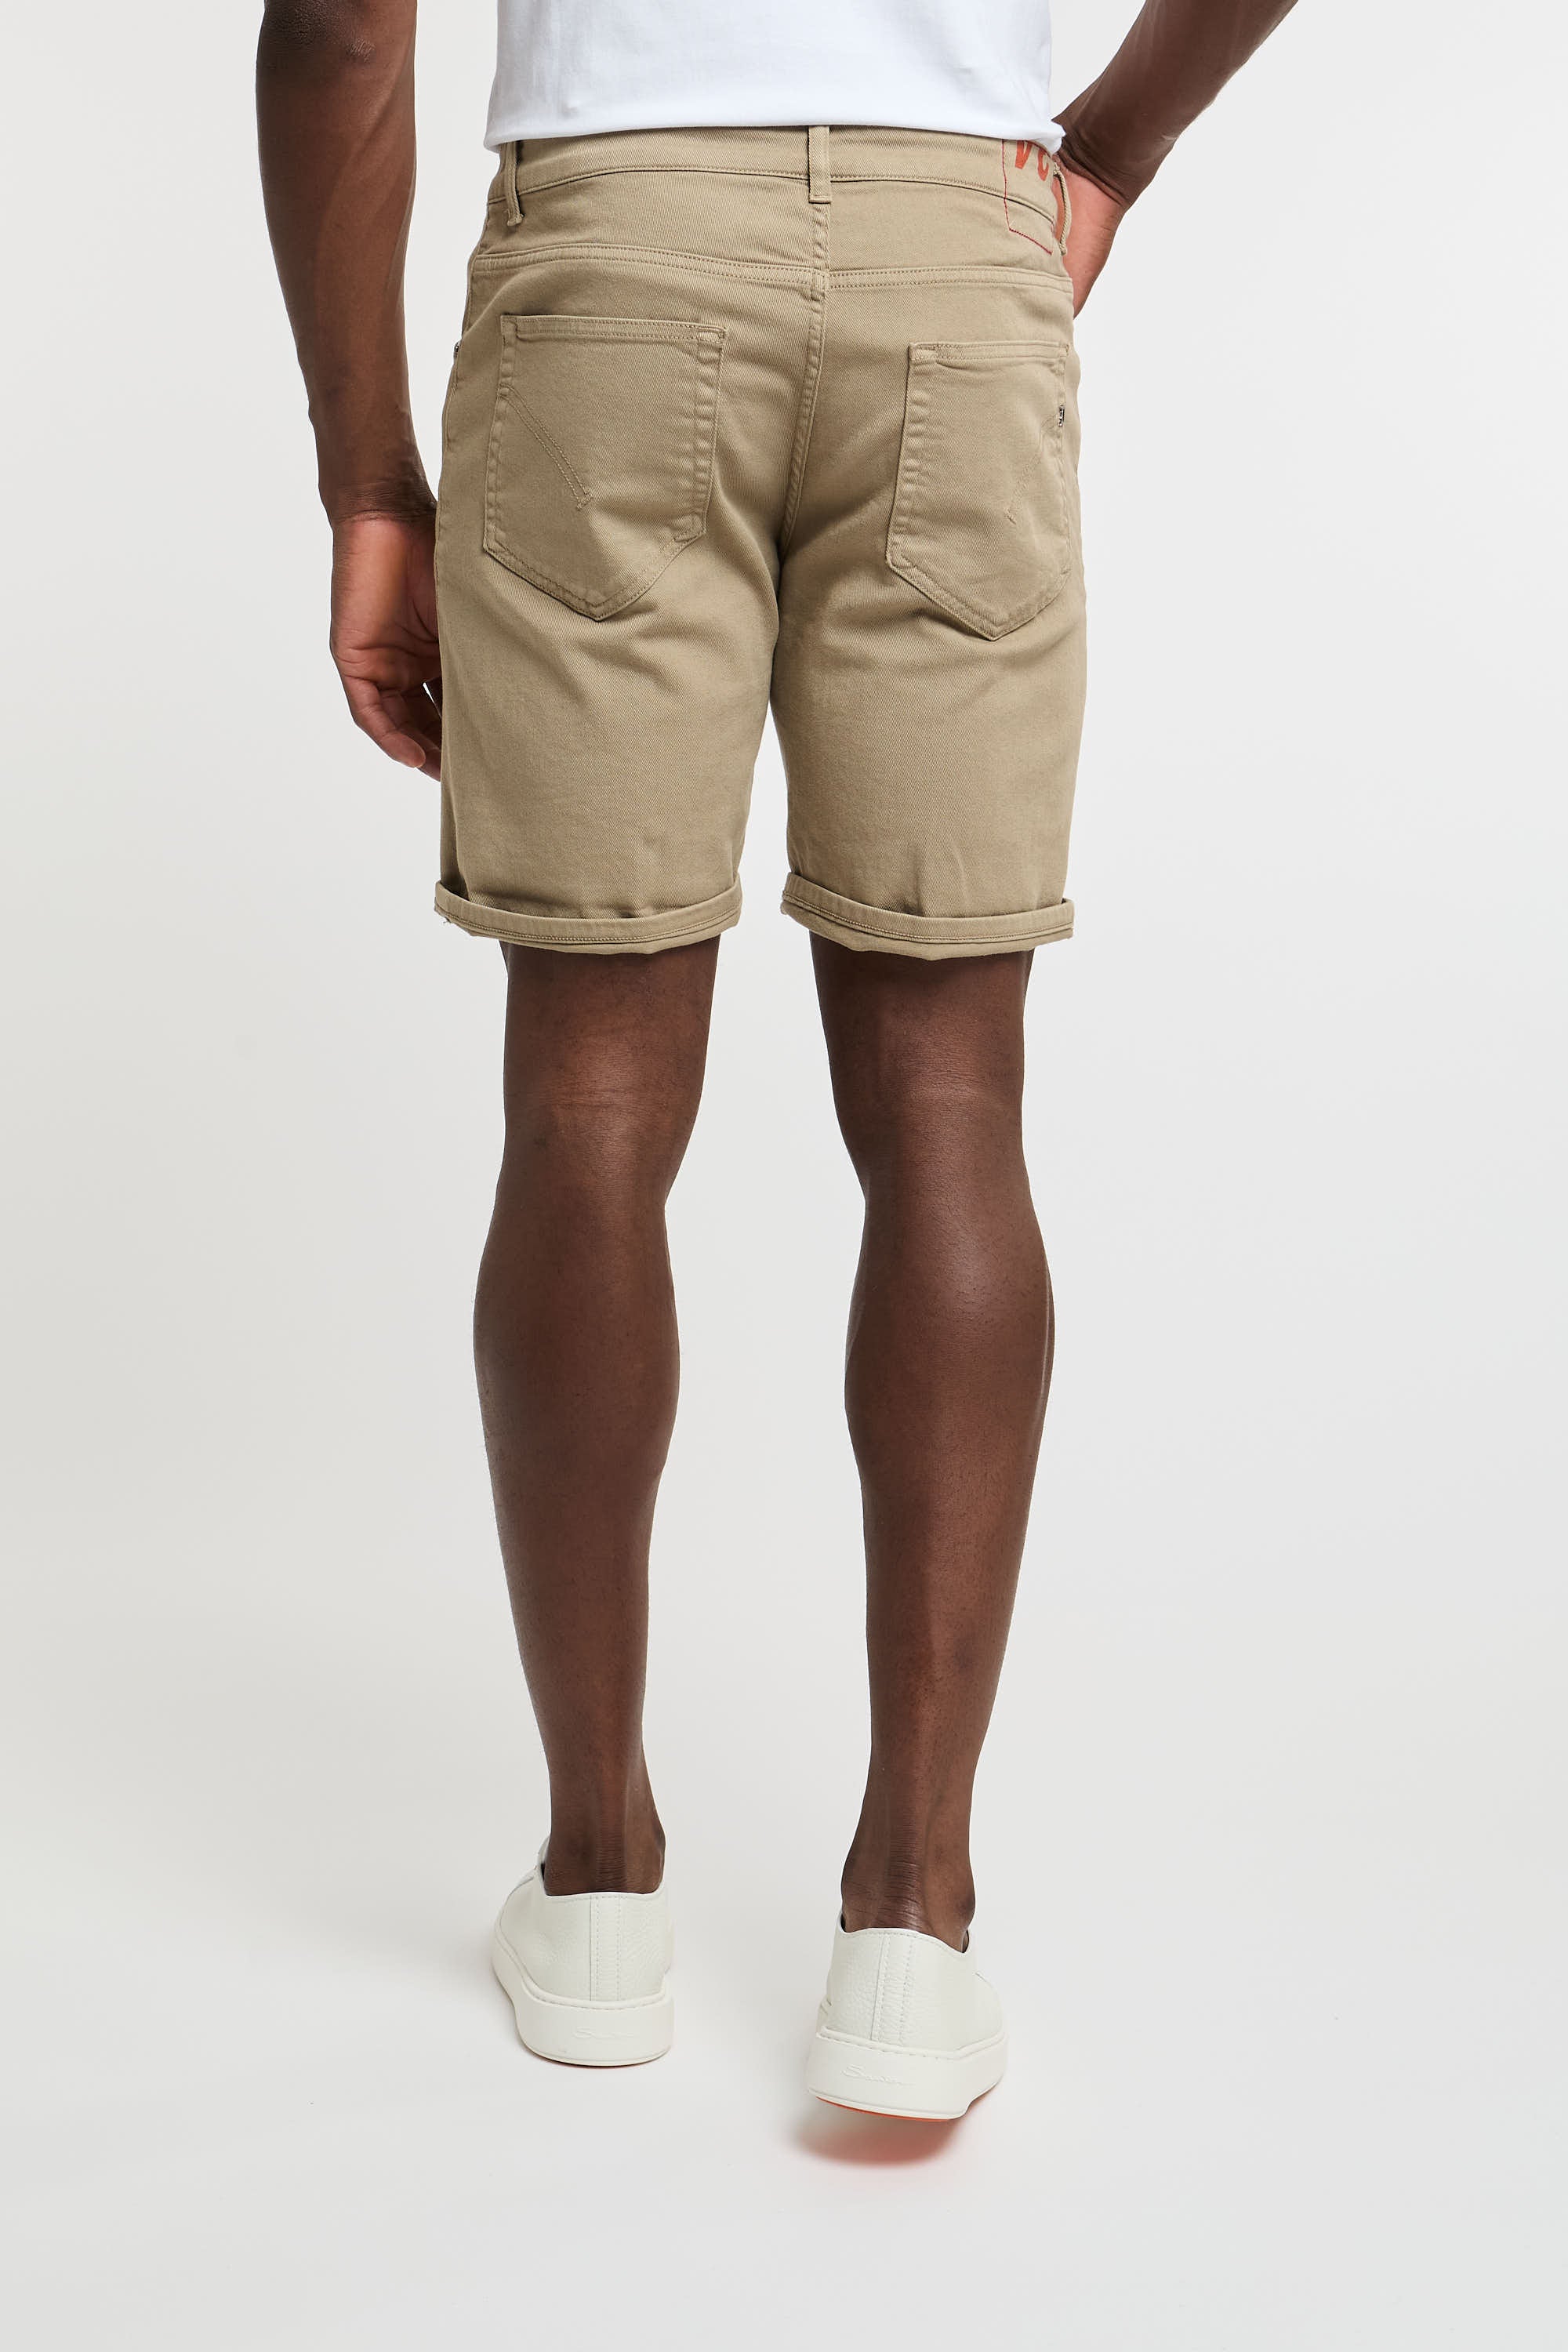 Dondup Derick Beige Cotton Bermuda Shorts-6